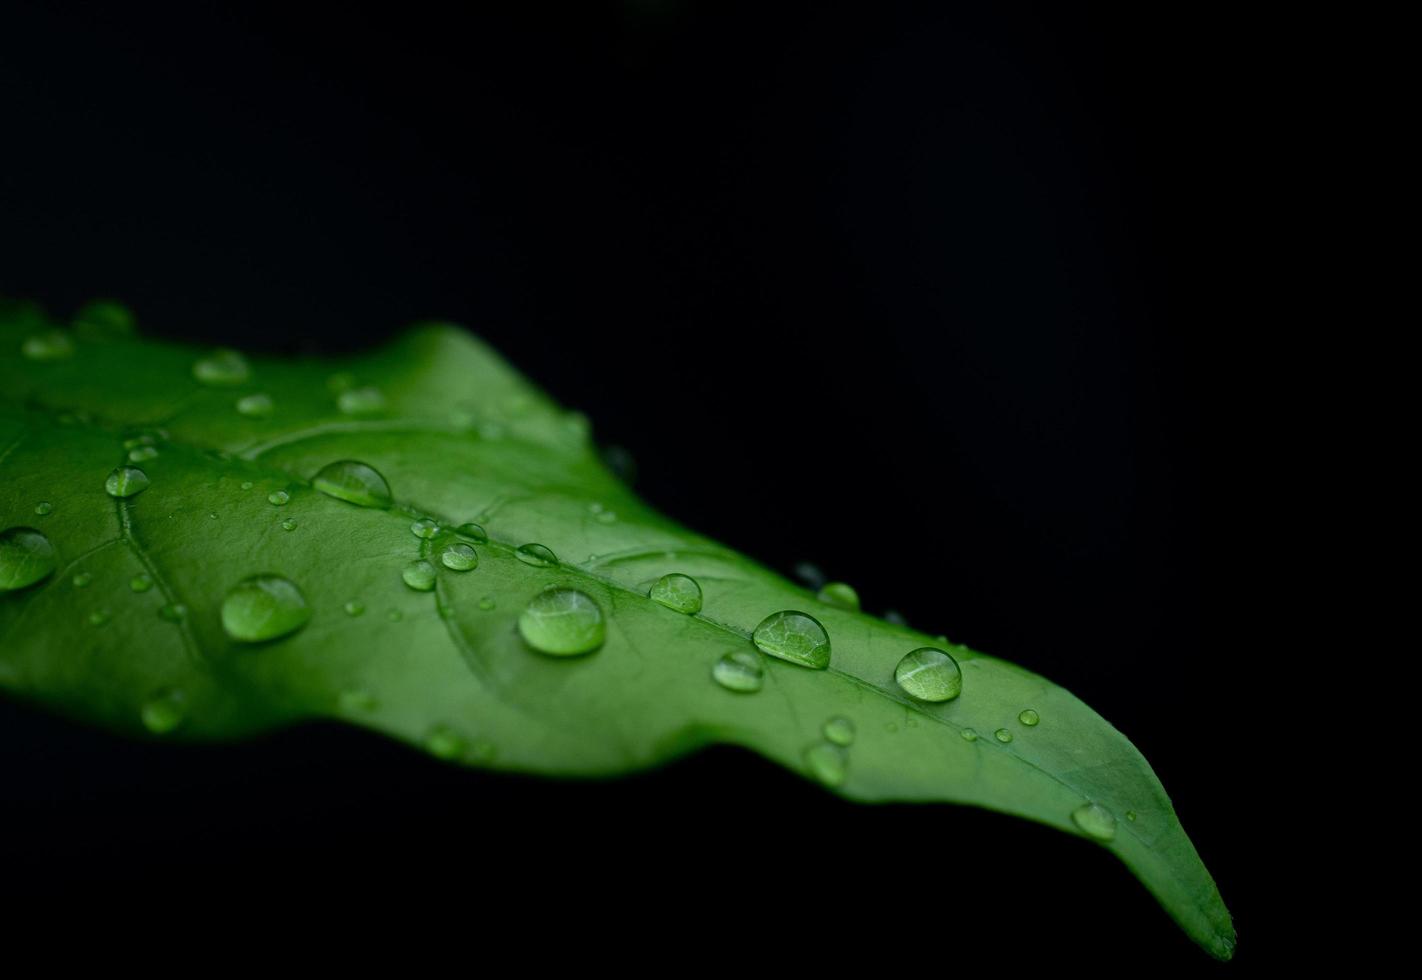 gouttes de pluie sur des feuilles vertes fraîches sur fond noir. photo macro de gouttelettes d'eau sur les feuilles